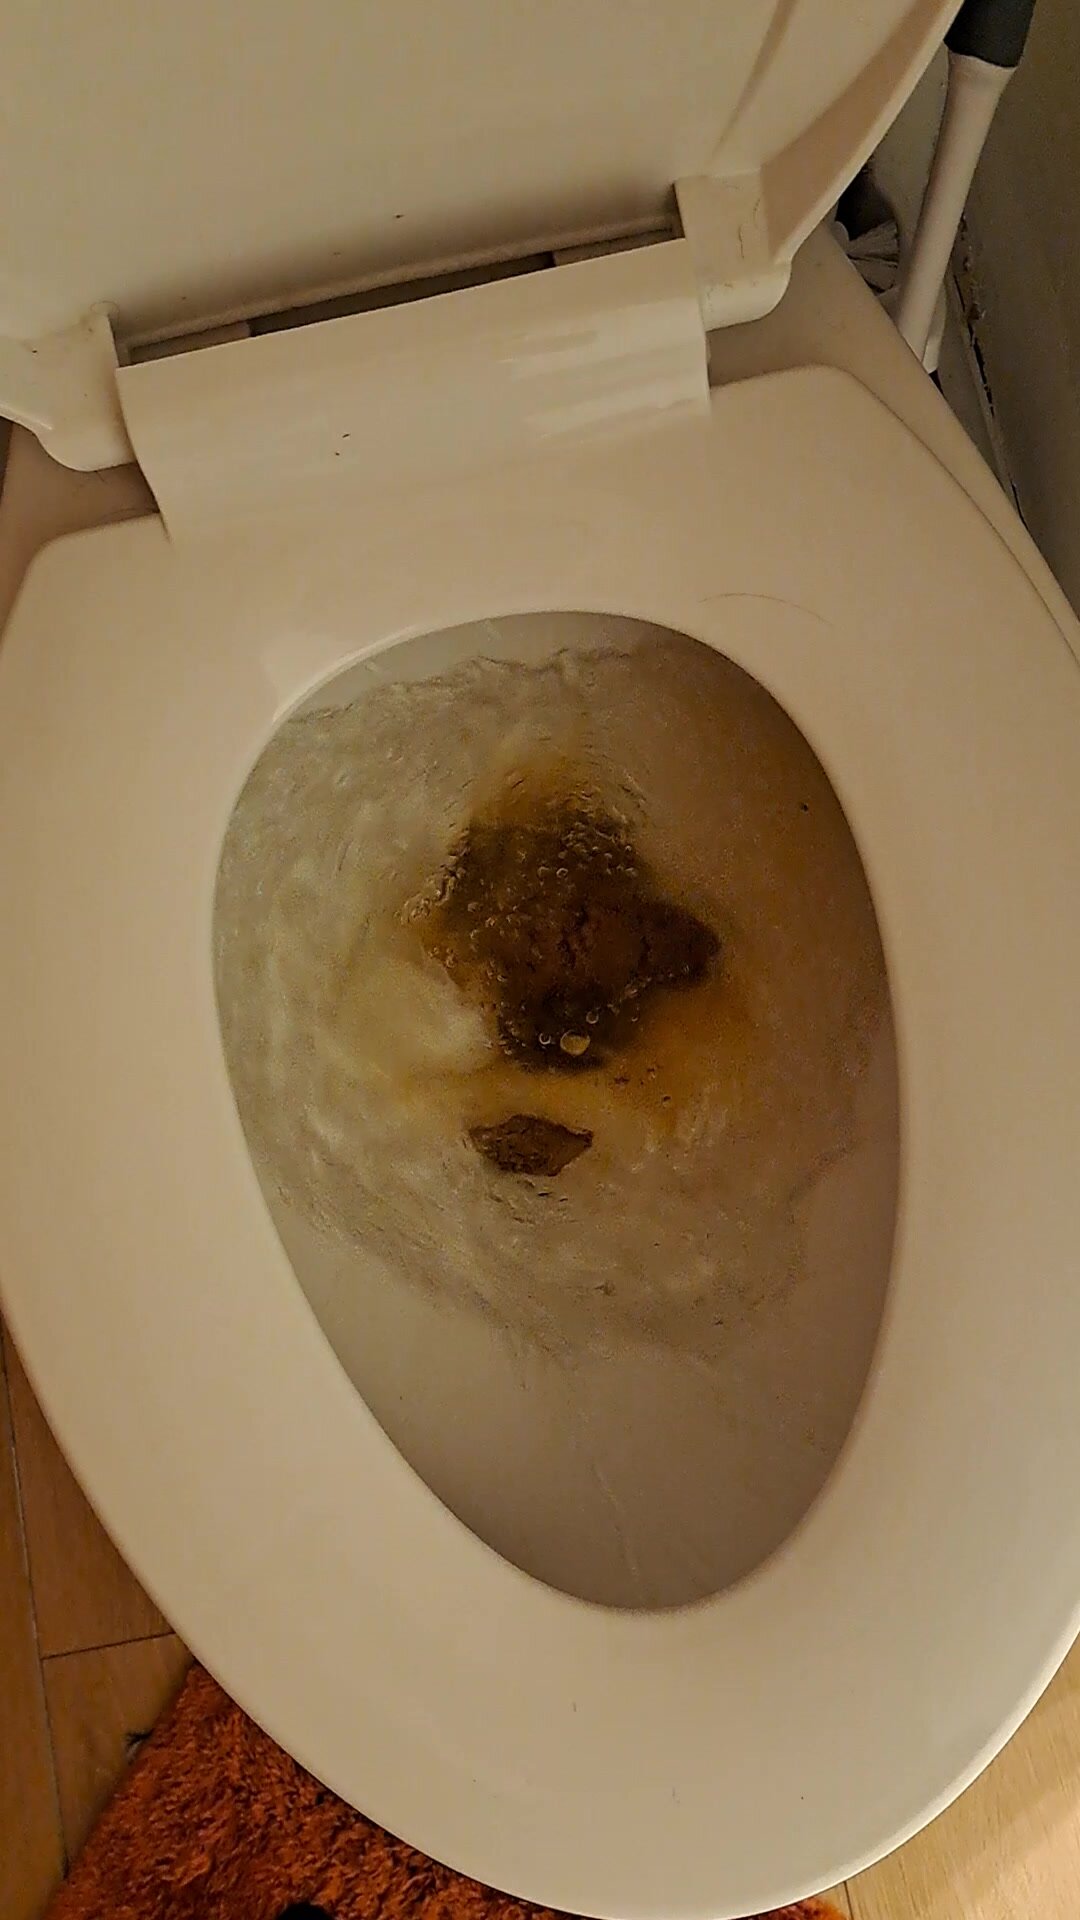 Solid squat poop flush